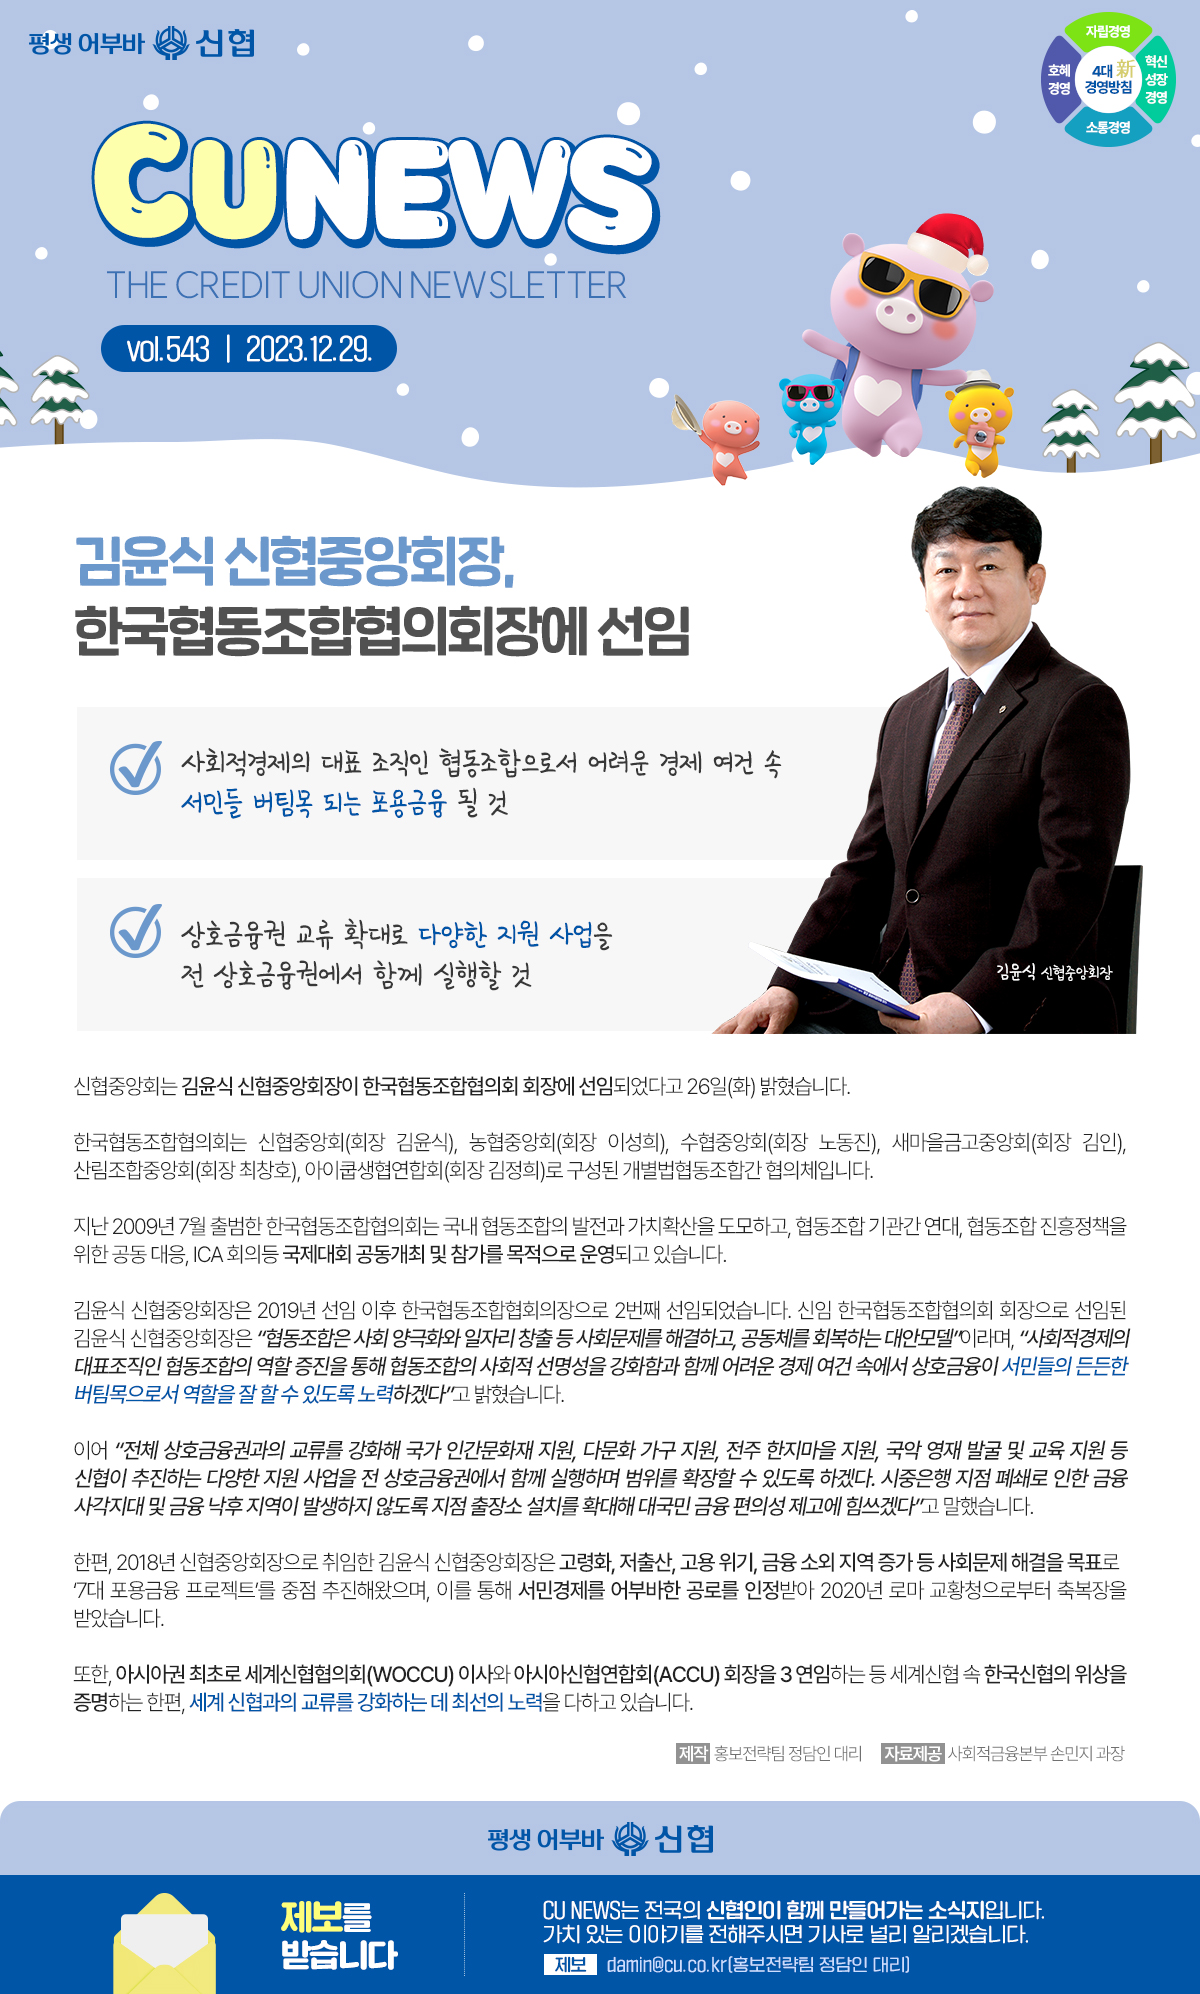 김윤식 신협중앙회장, 한국협동조합협의회장에 선임 1 이미지